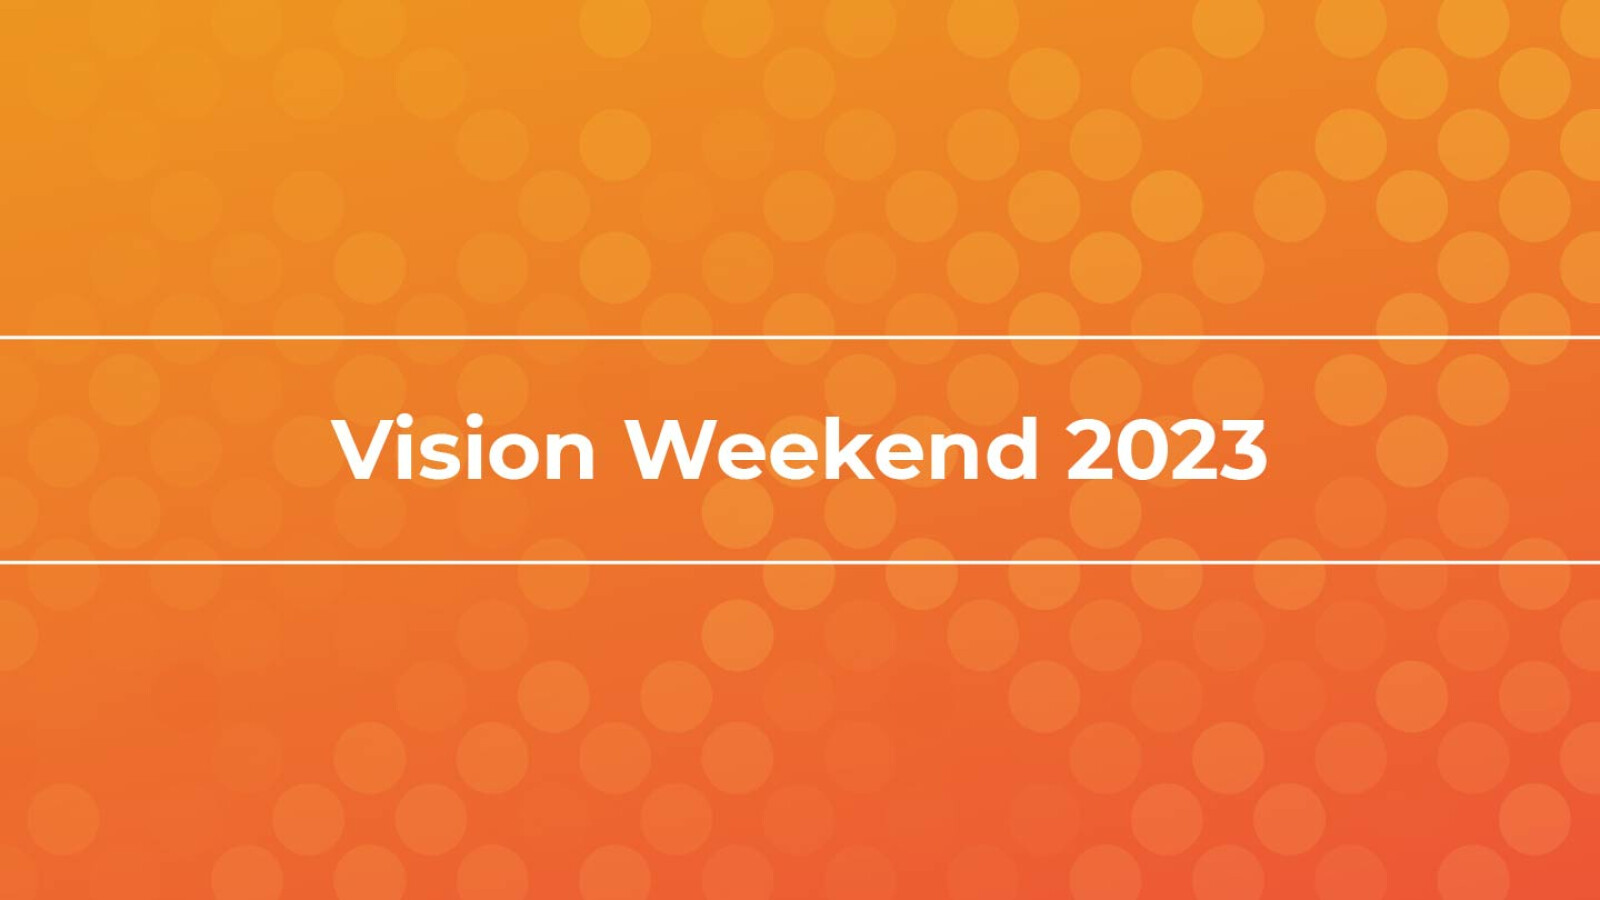 Vision Weekend 2023